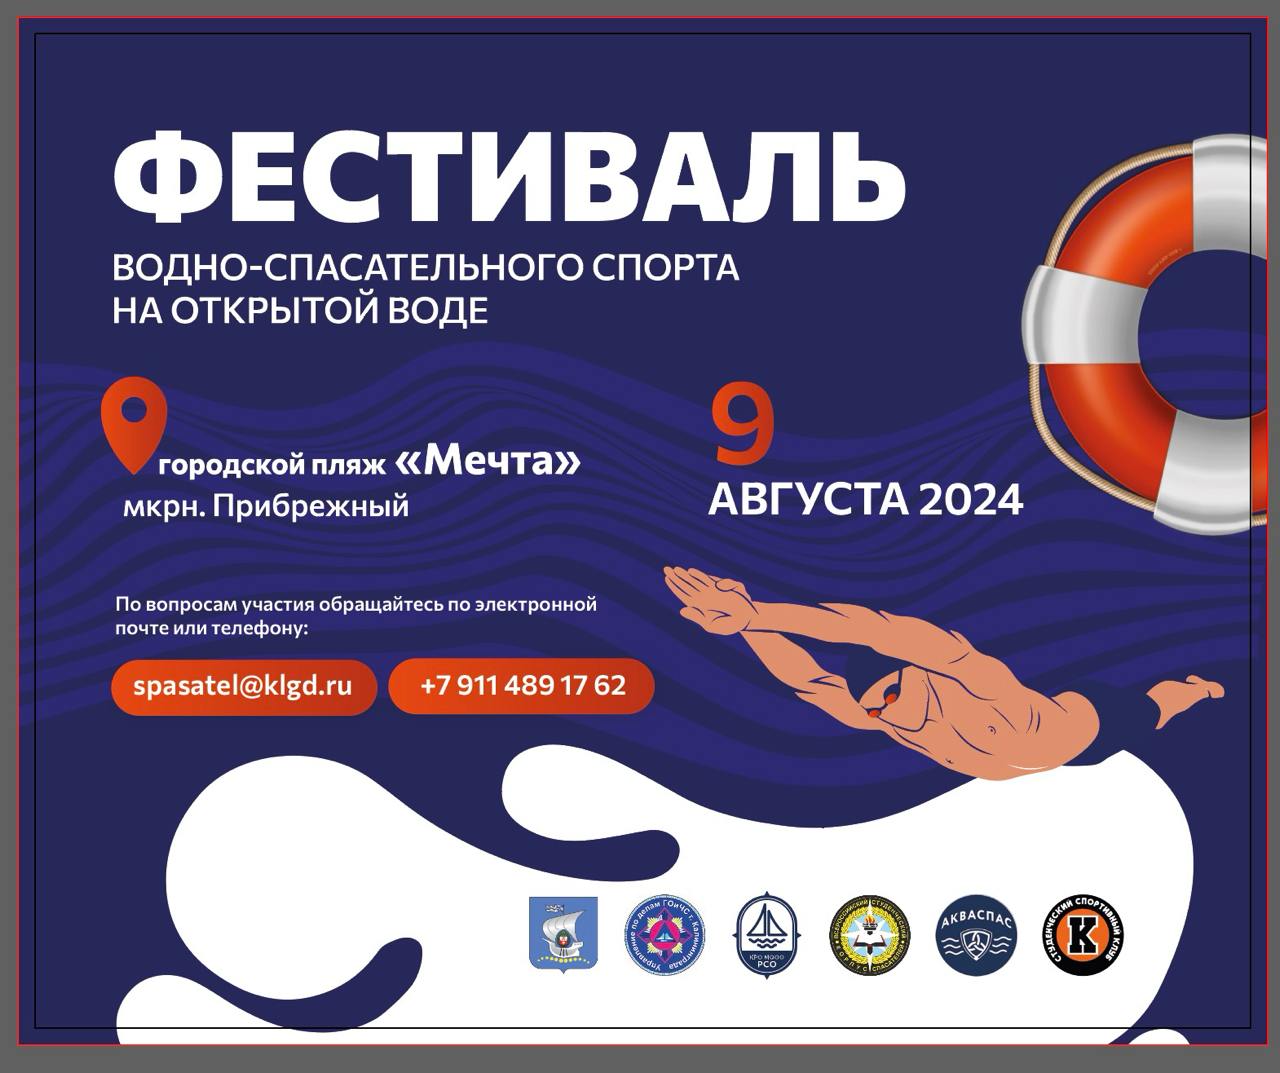 В Калининграде состоится фестиваль водно-спасательного спорта